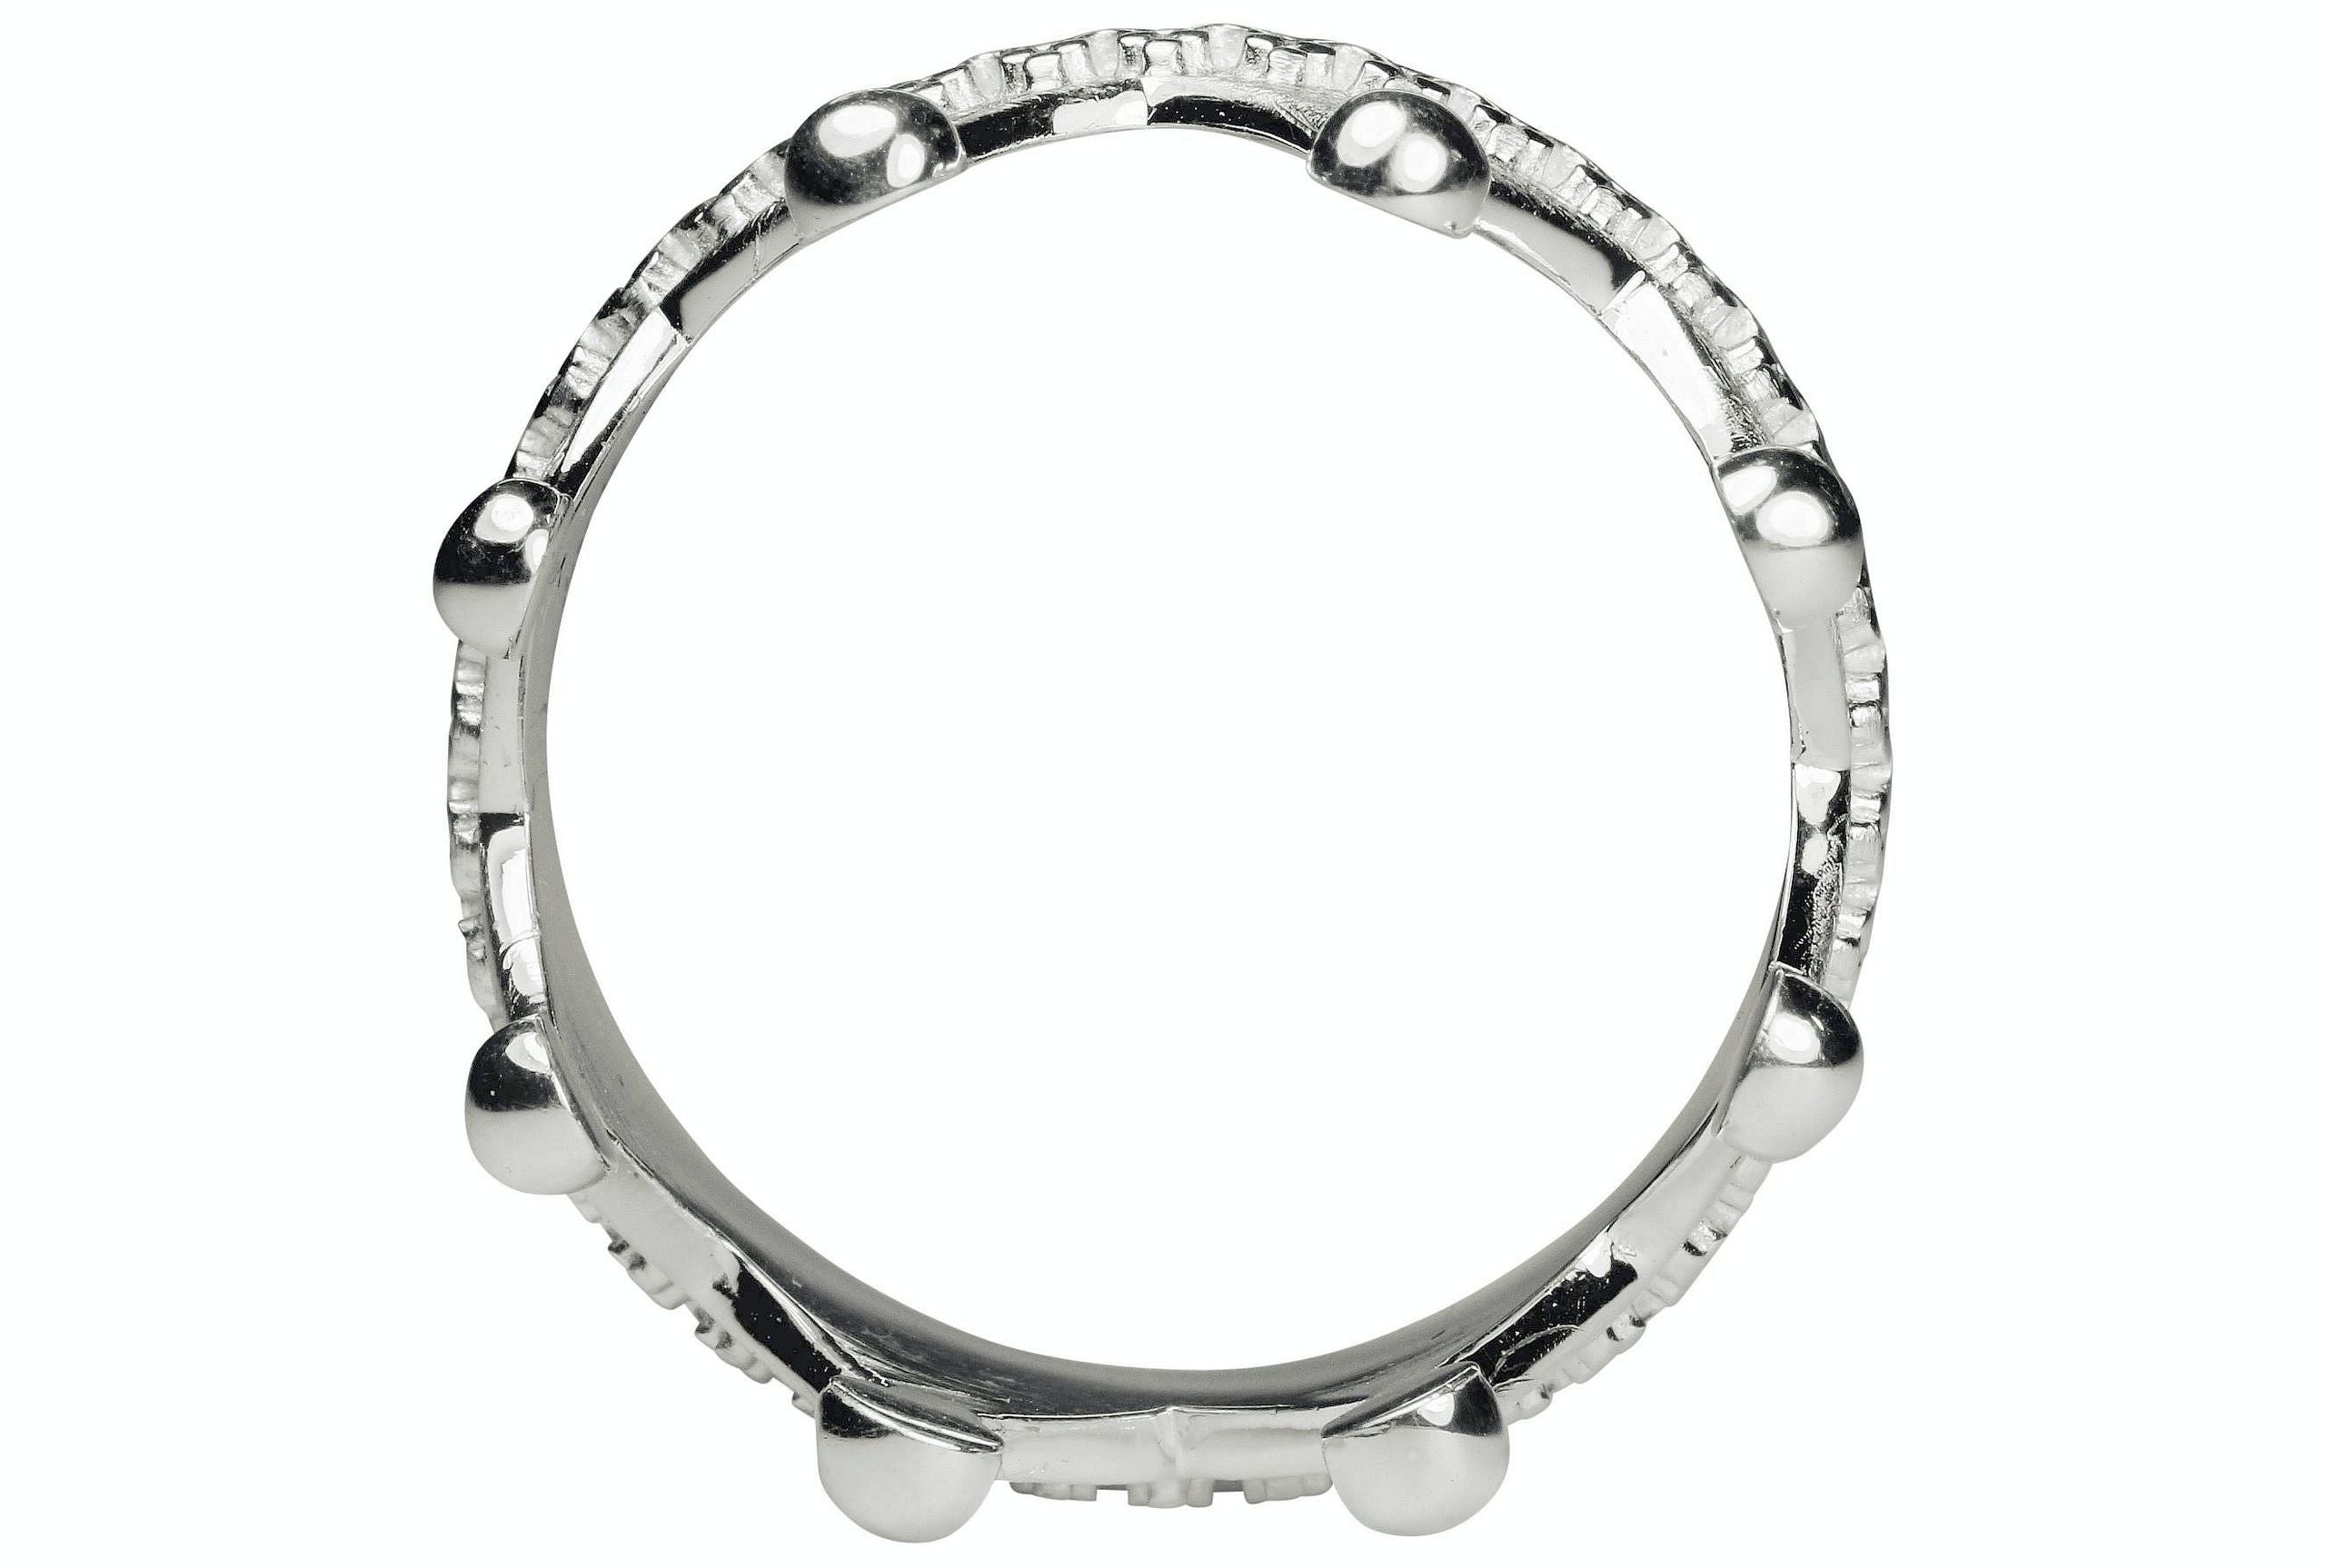 Ein Ring aus Silber für Damen in den Größen 64 bis 70 im Kronendesign mit acht Zacken und ein rund umlaufenden Ornamentlötung.